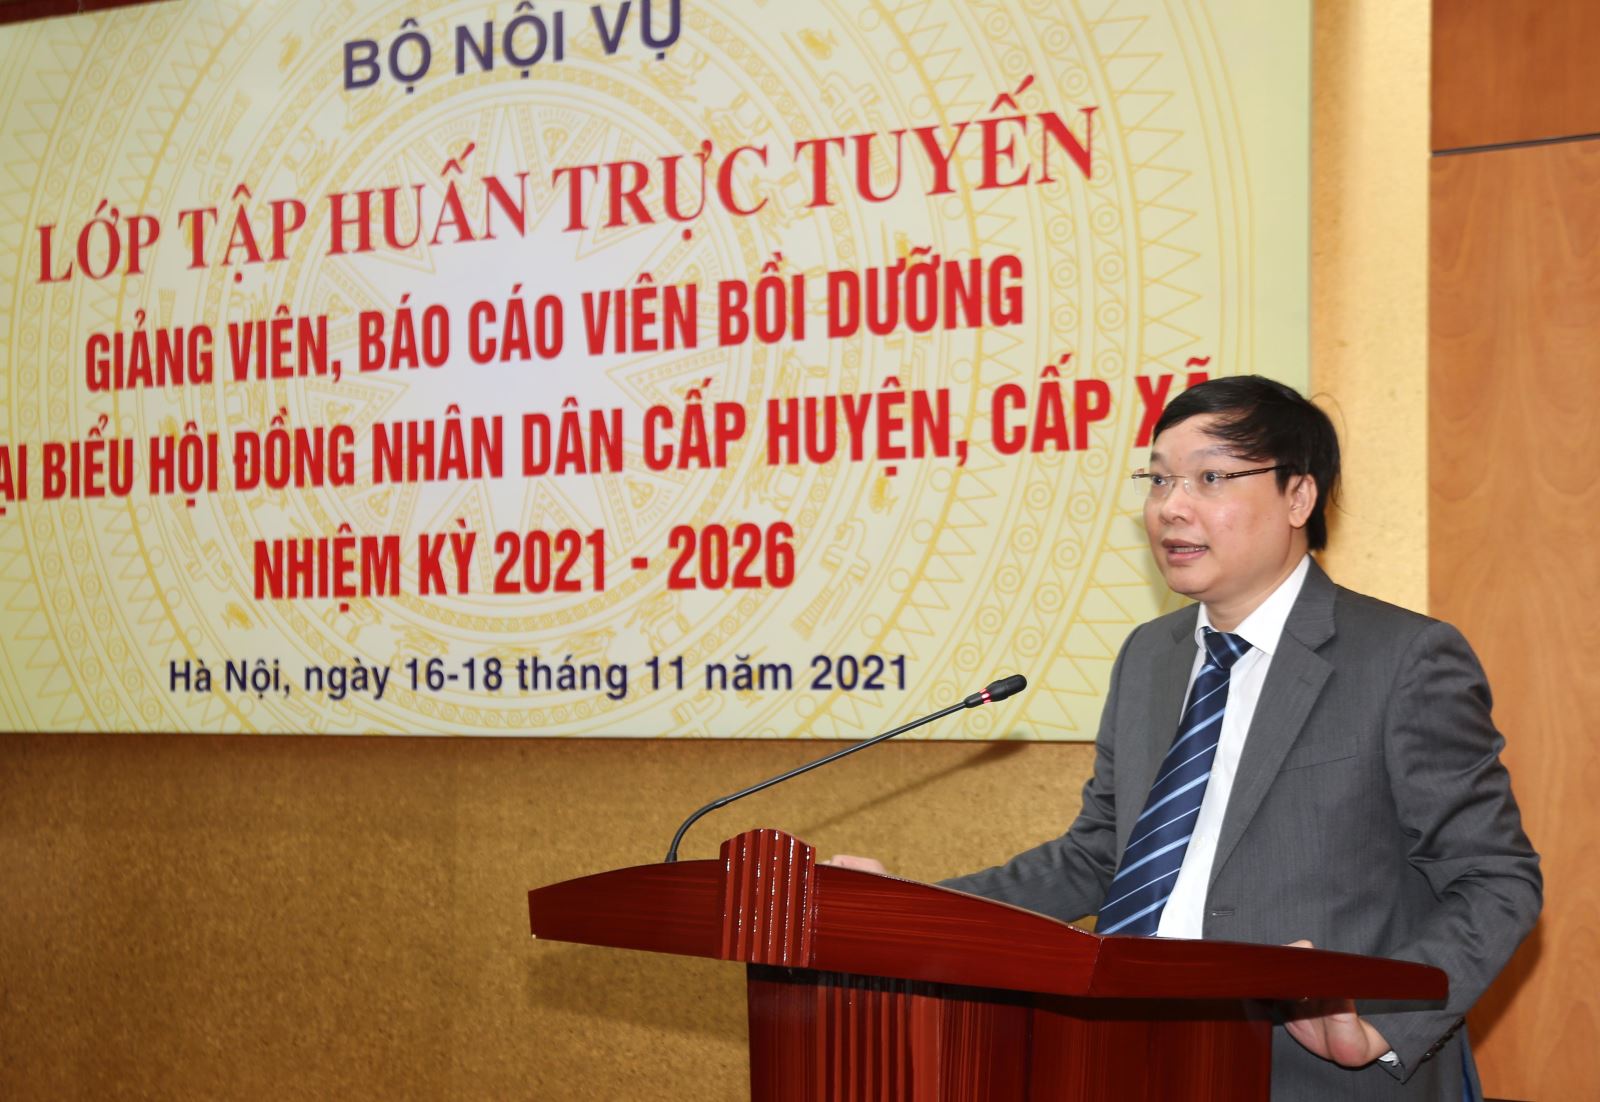 Thứ trưởng Bộ Nội vụ Trương Hải Long phát biểu khai mạc lớp bồi dưỡng